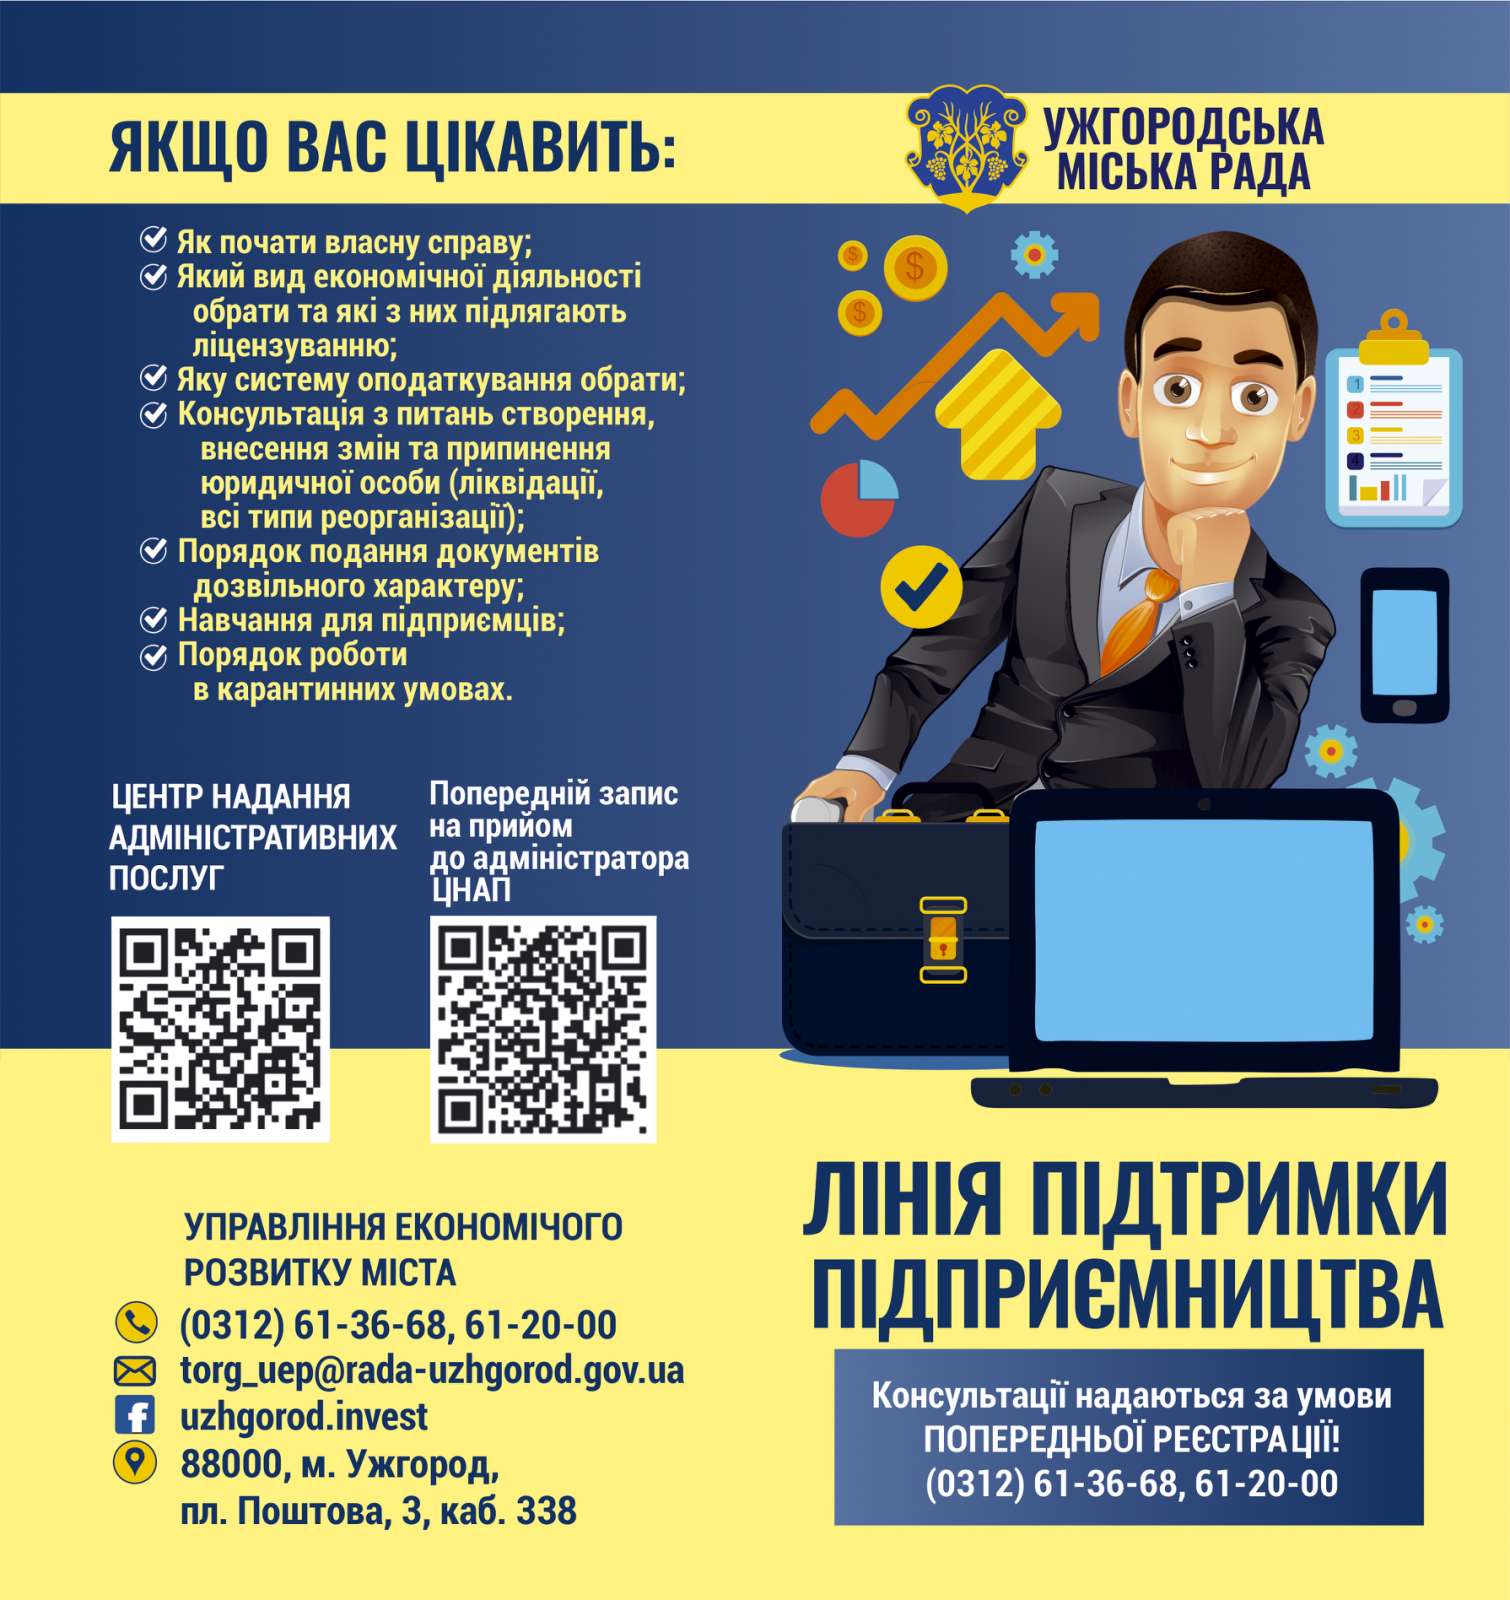 "Лінія підтримки підприємця" працює в Ужгородській міській раді